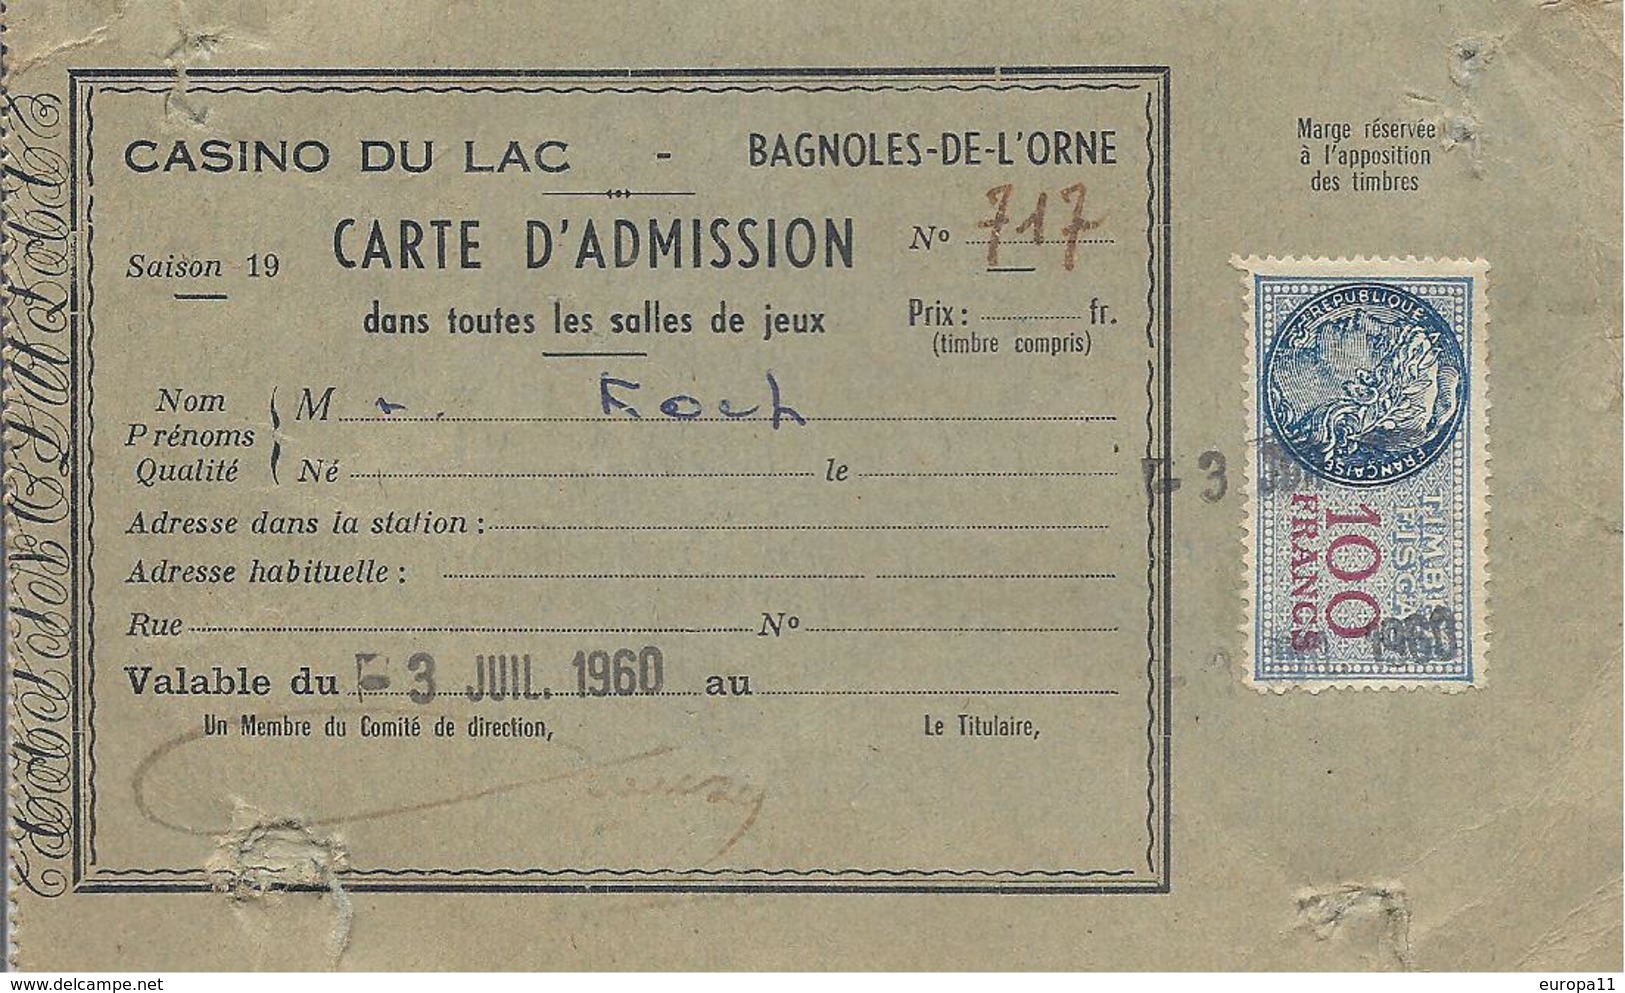 Carte D'Admission Du Casino Du Lac A Bagnoles De L'Orne De 1960 - Biglietti D'ingresso